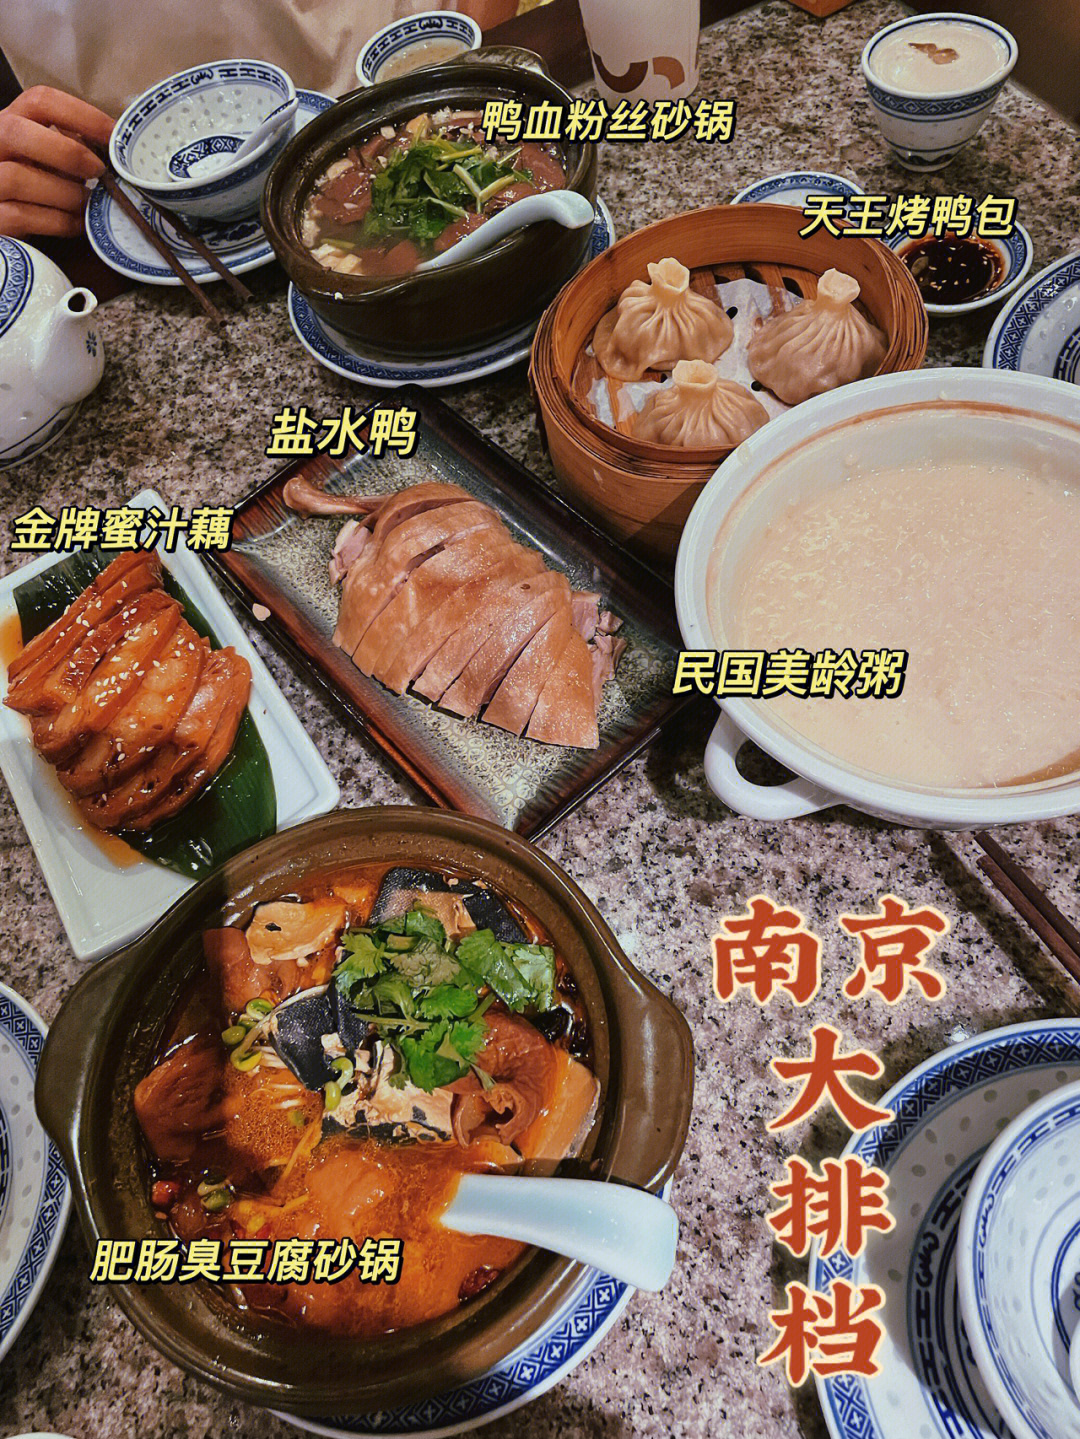 南京大排档菜价图片